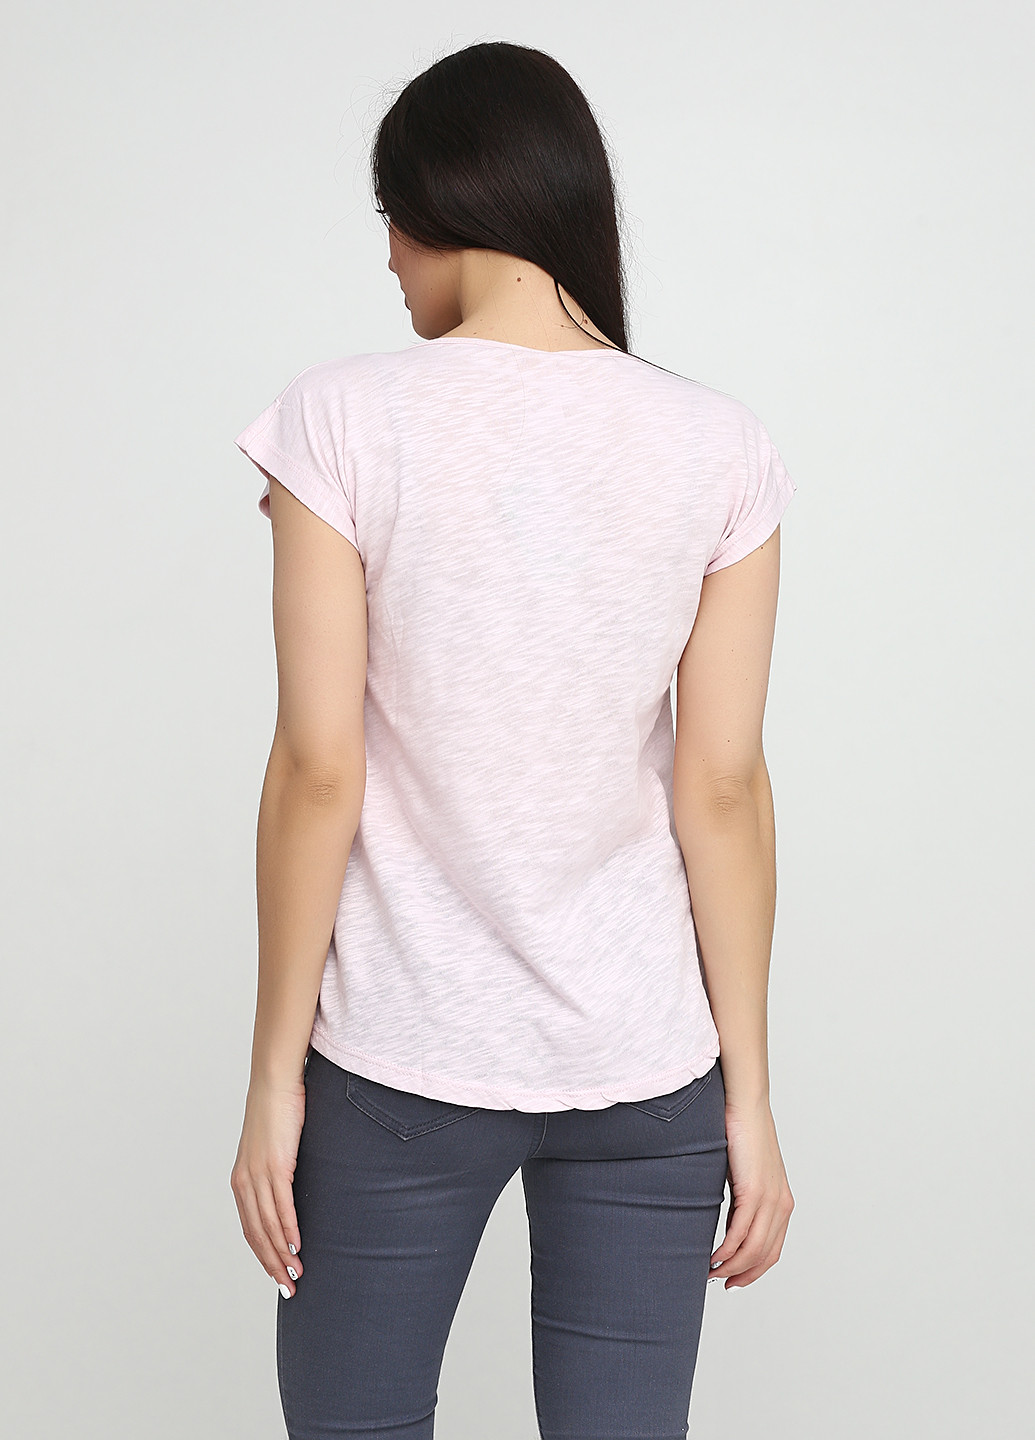 Бледно-розовая летняя футболка KSV